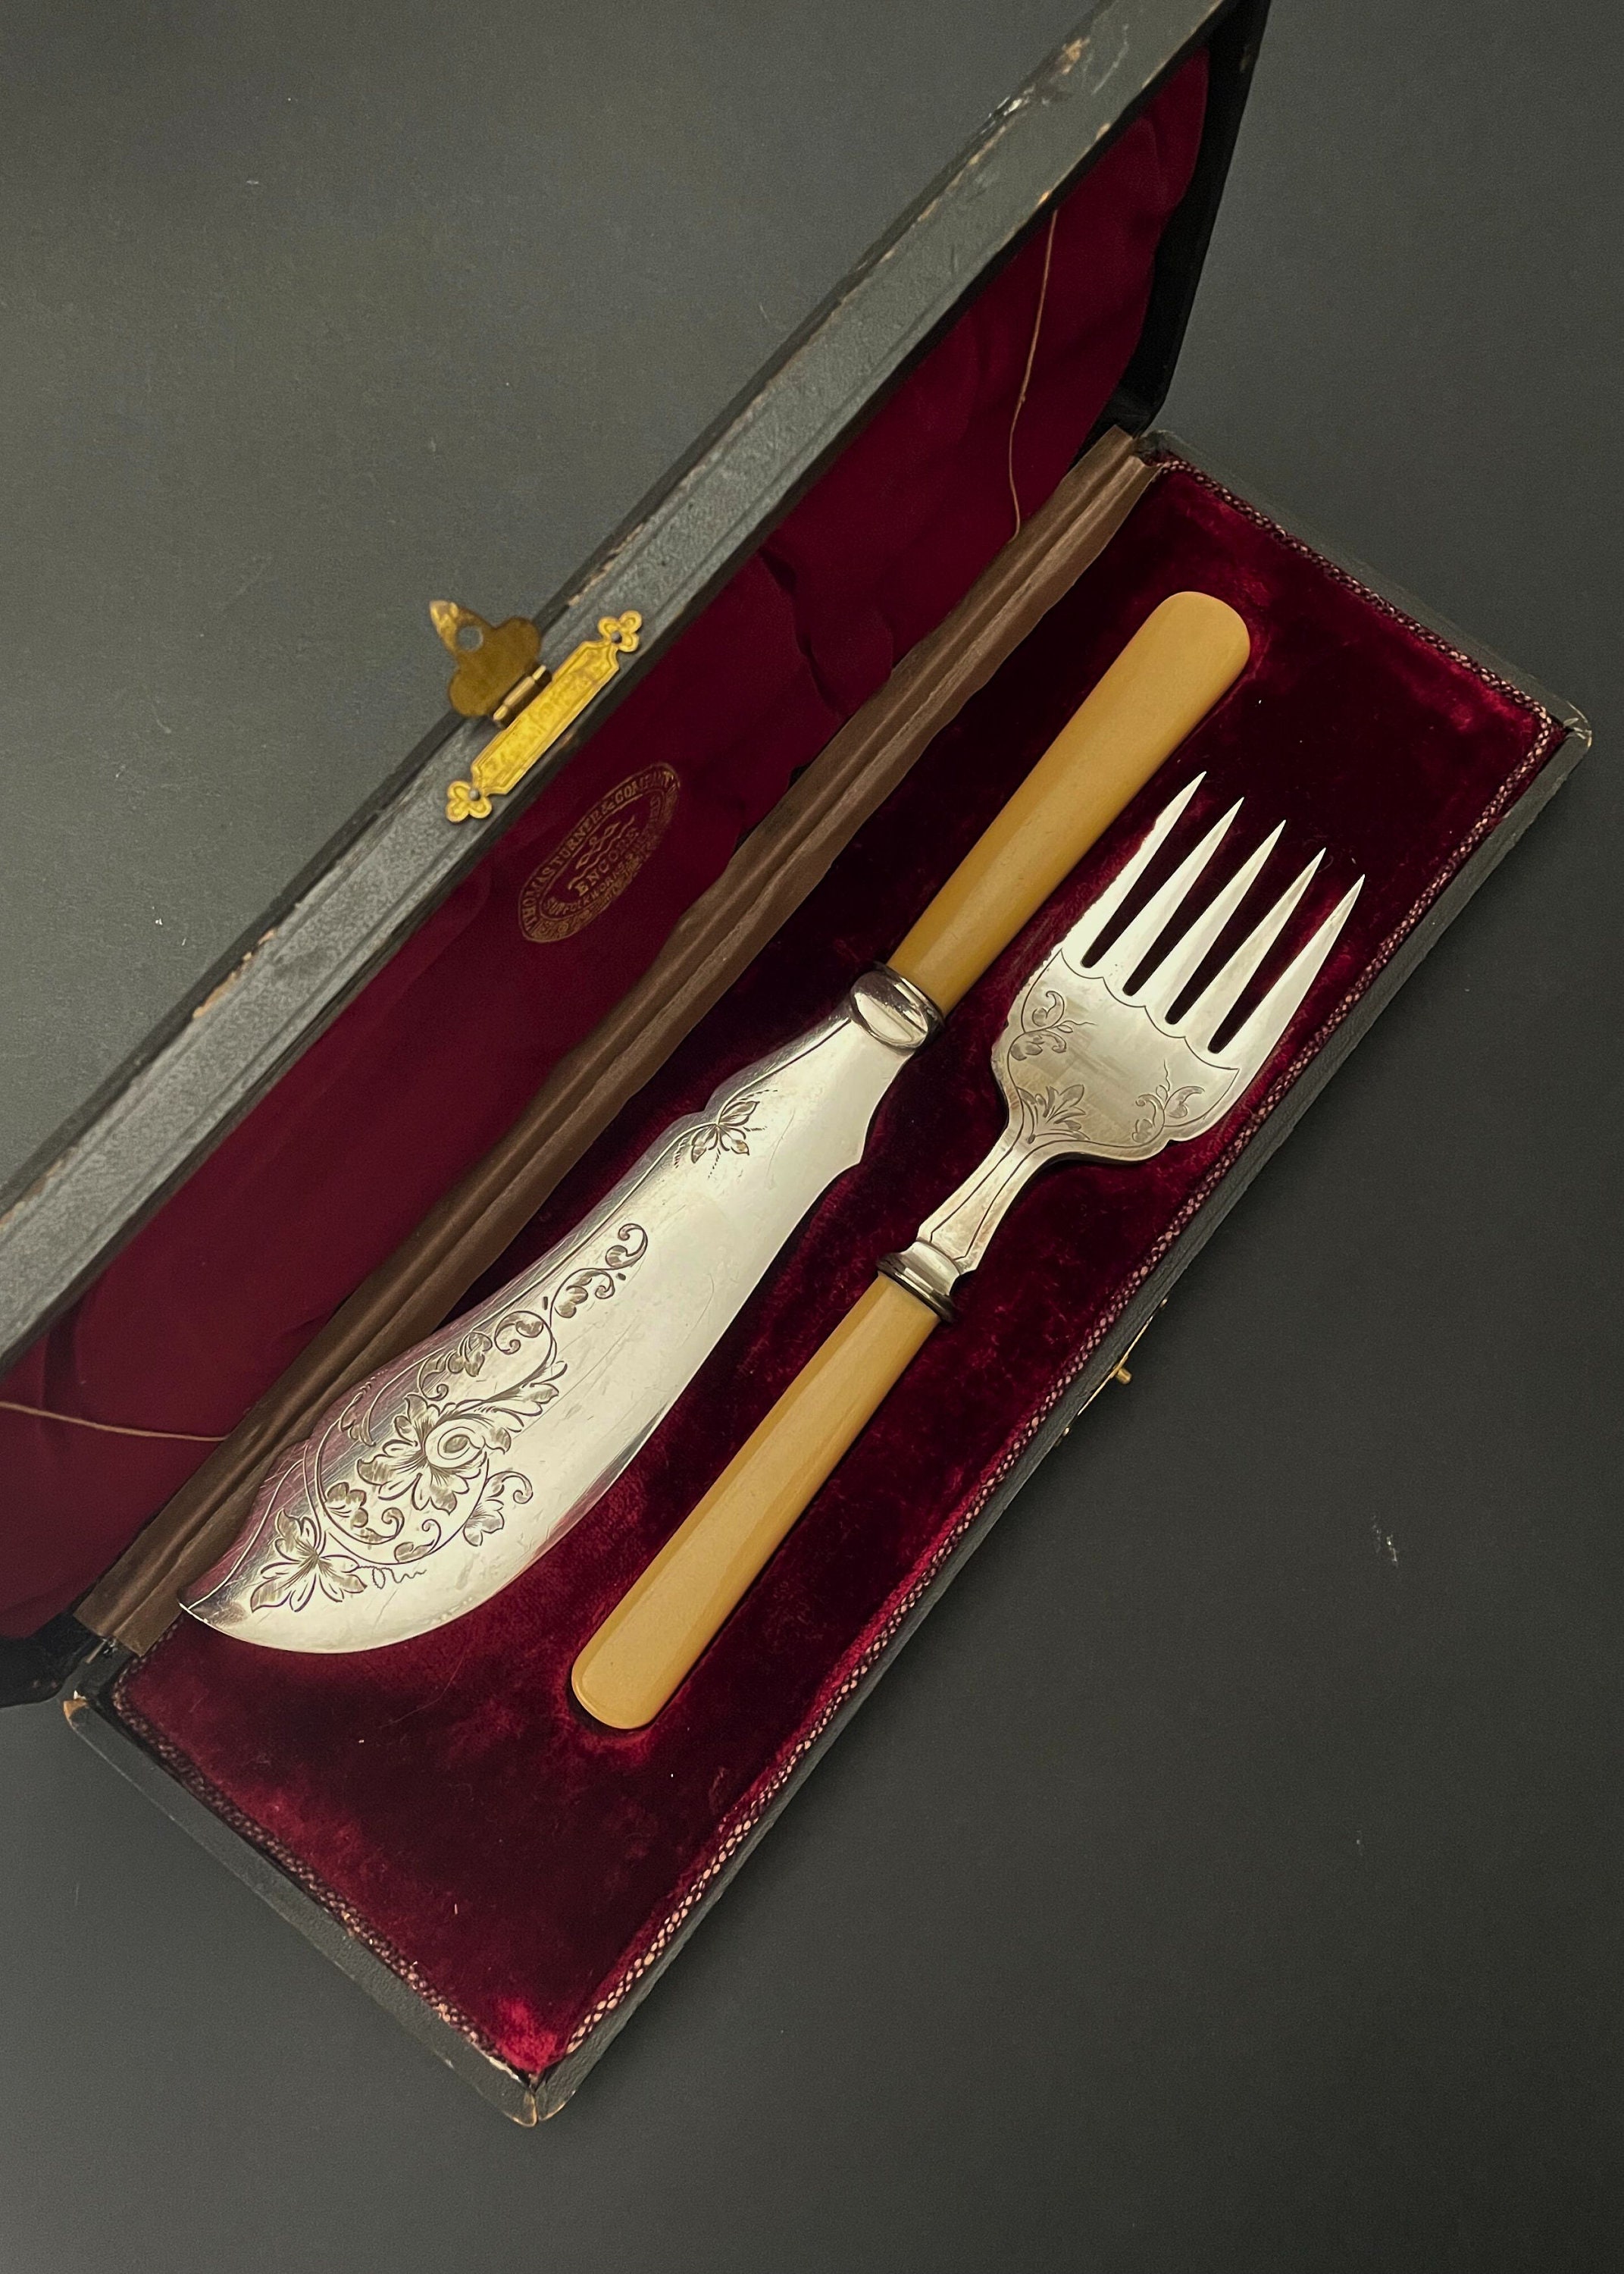 Regent Sheffield Cutlery Set Carving Steak Knives 24 Kt Gold plated 12pc Set